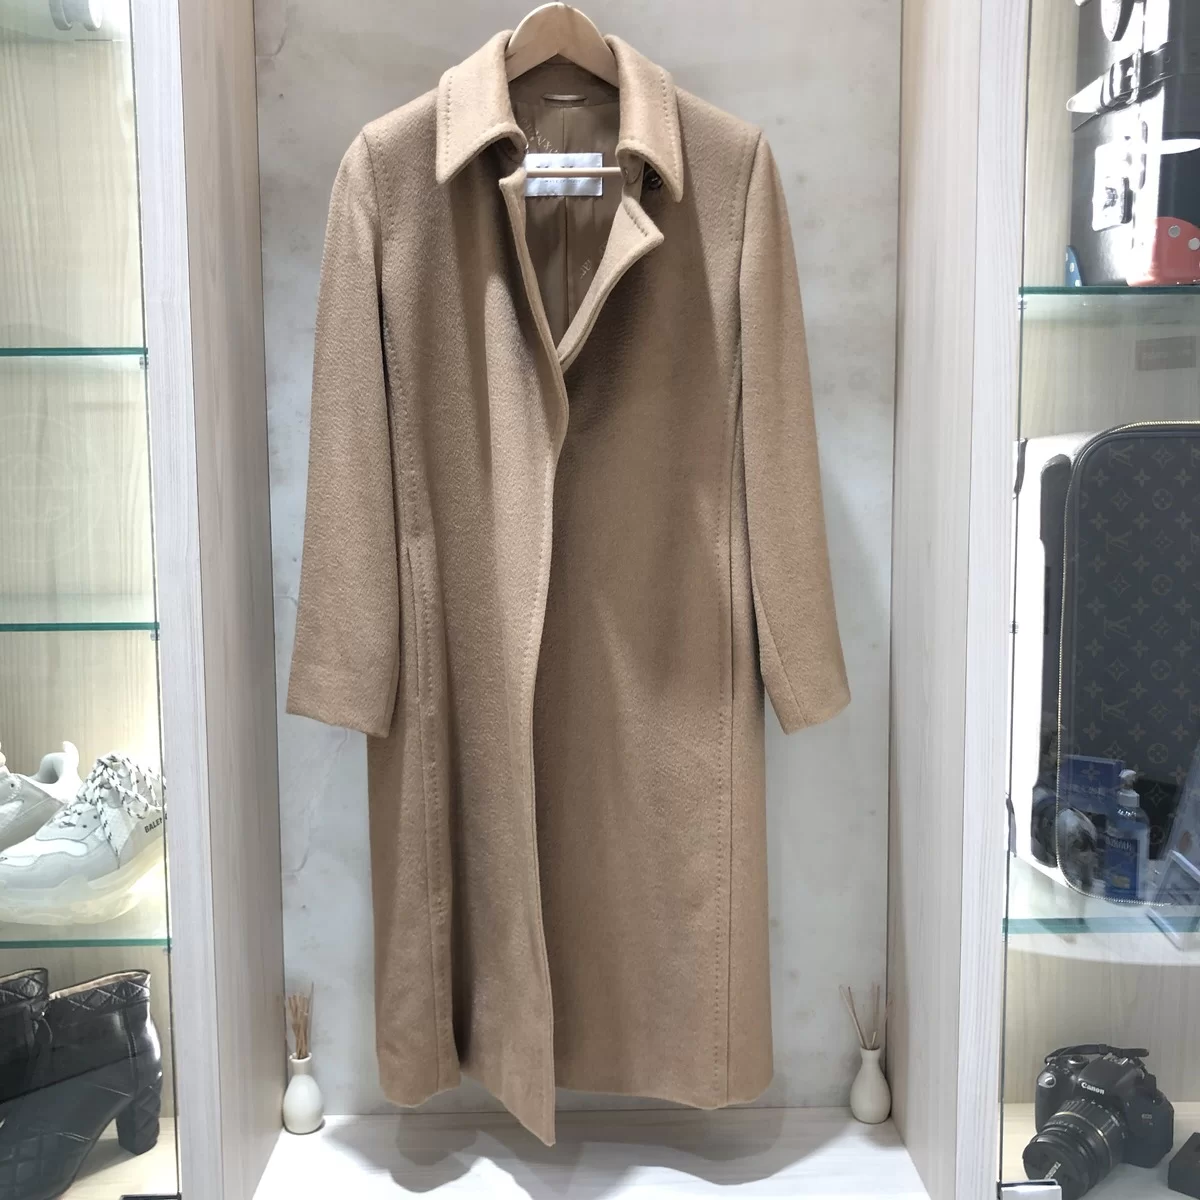 エコスタイル渋谷店で、OTS期のマックスマーラのアルパカウールコートを買取ました。 買取価格・実績 2020年10月25日公開情報｜ブランド